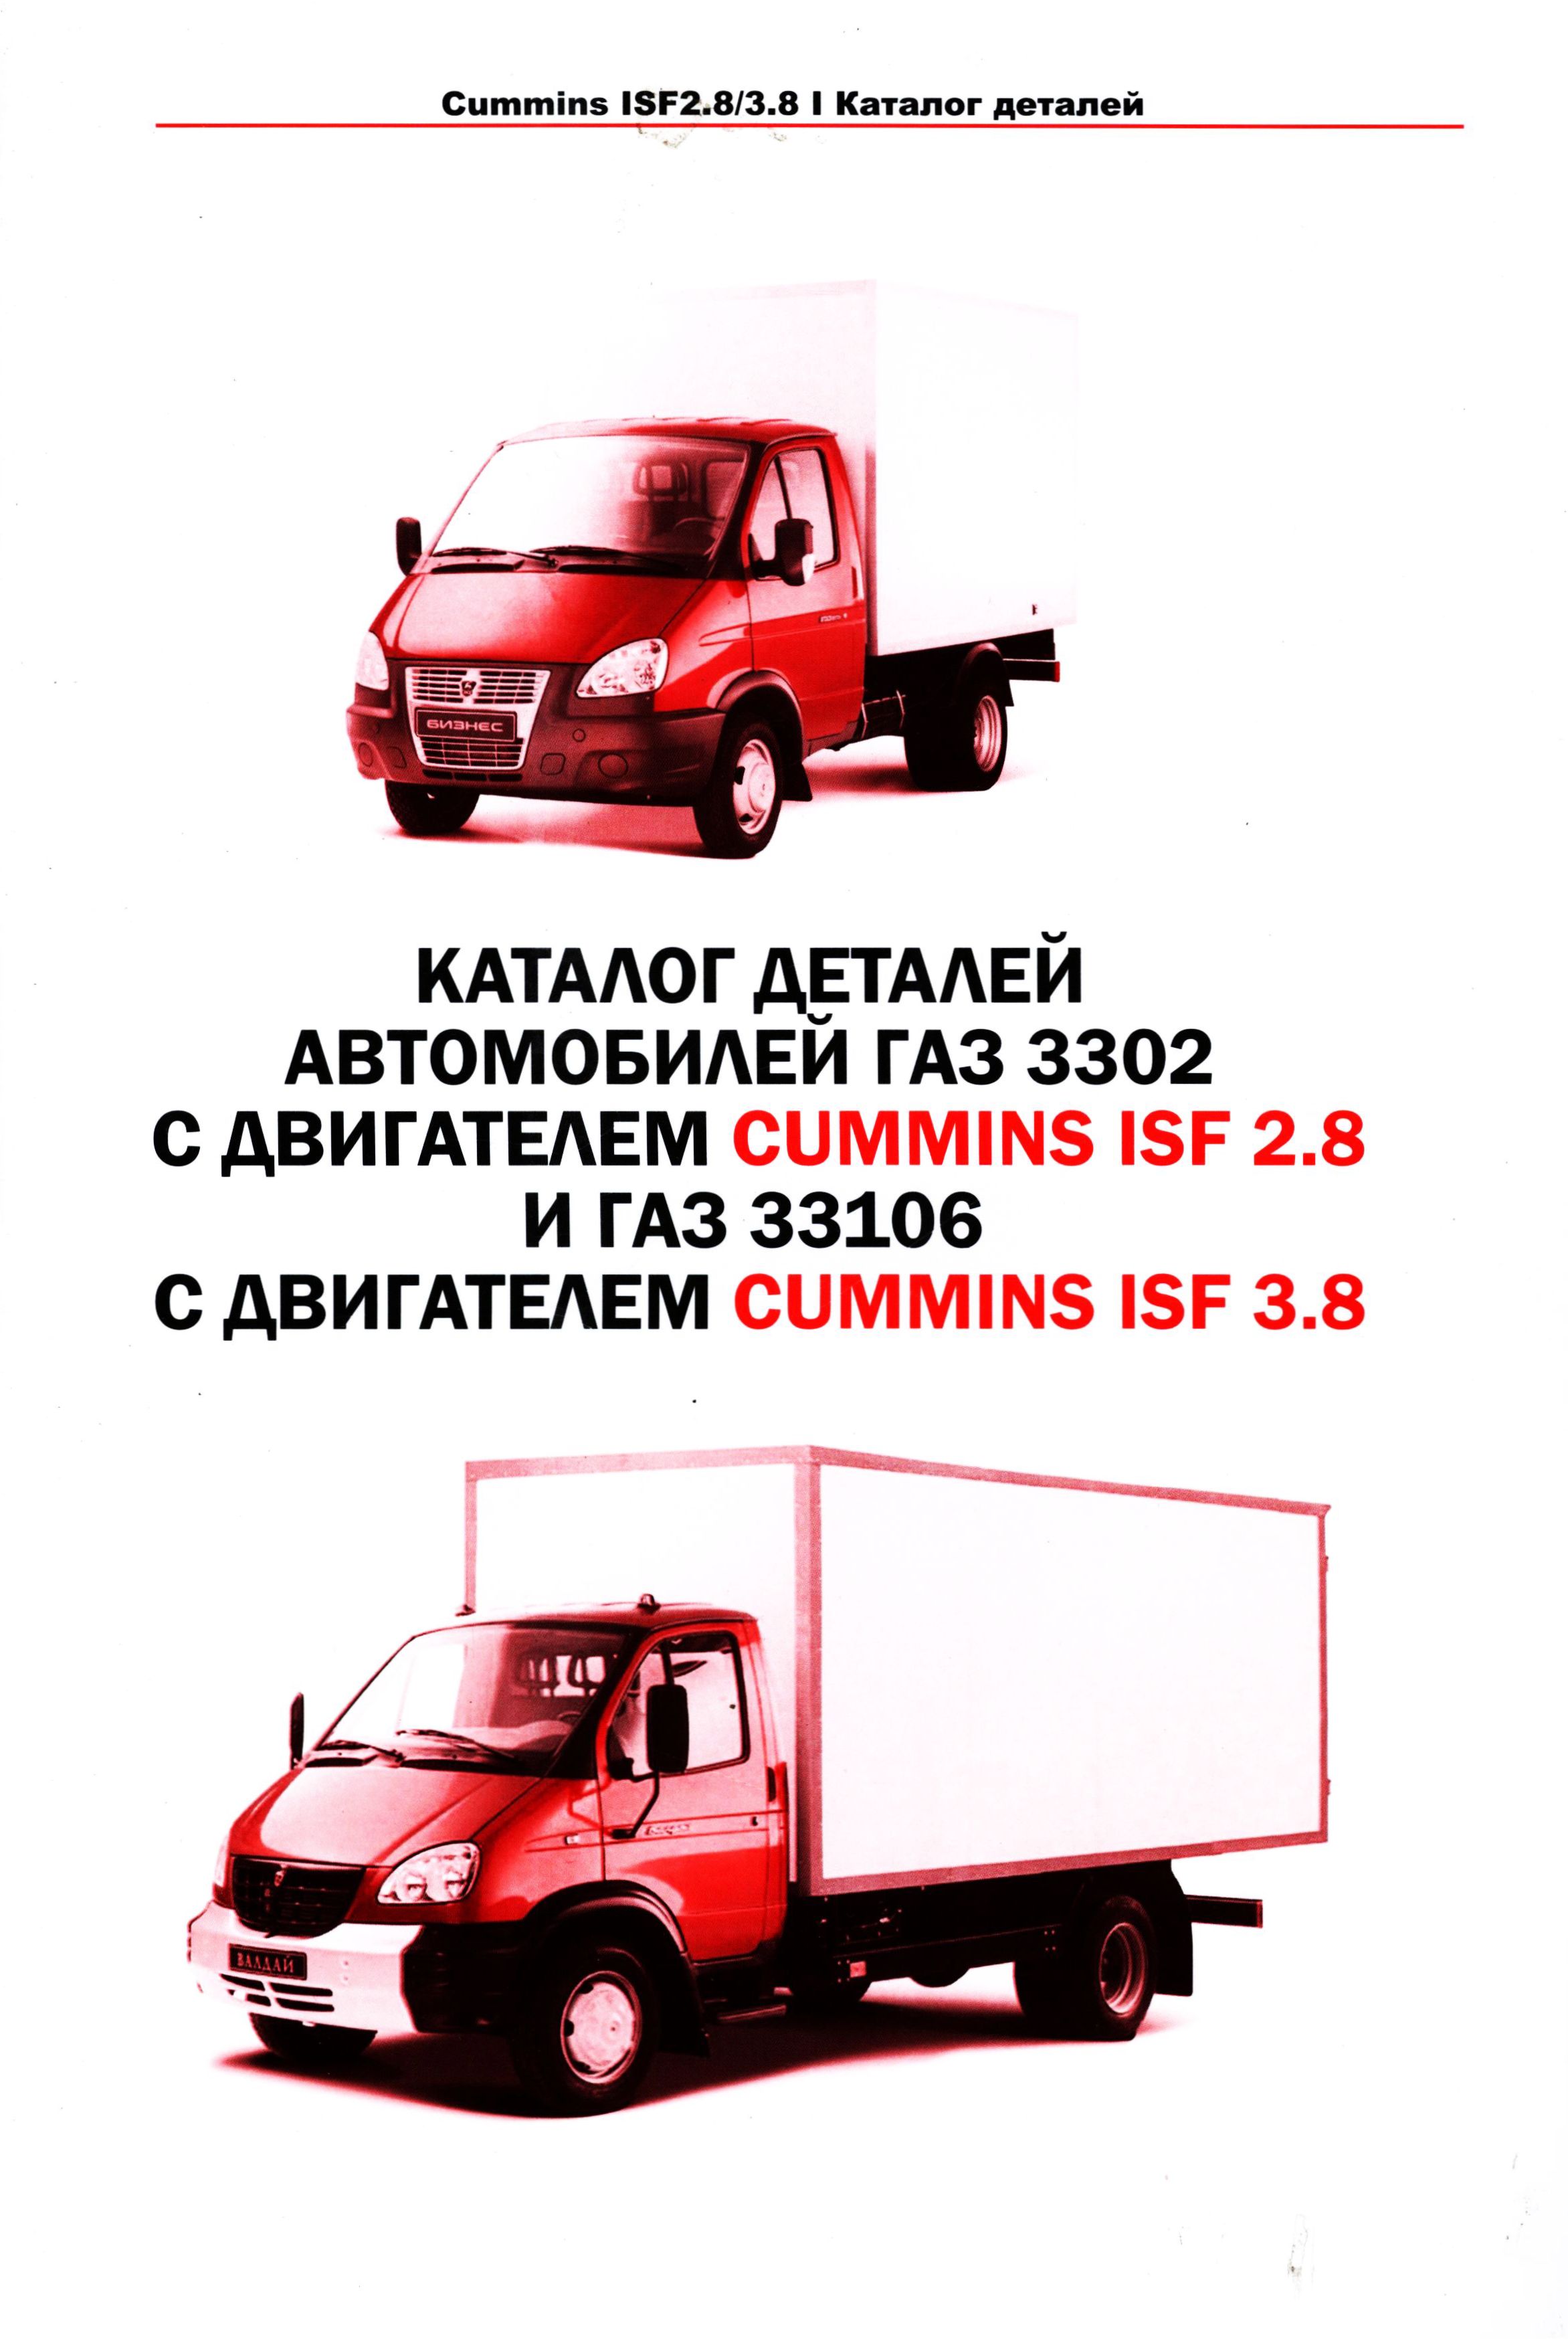 Каталог деталей ГАЗ 3302 и ГАЗ 33106